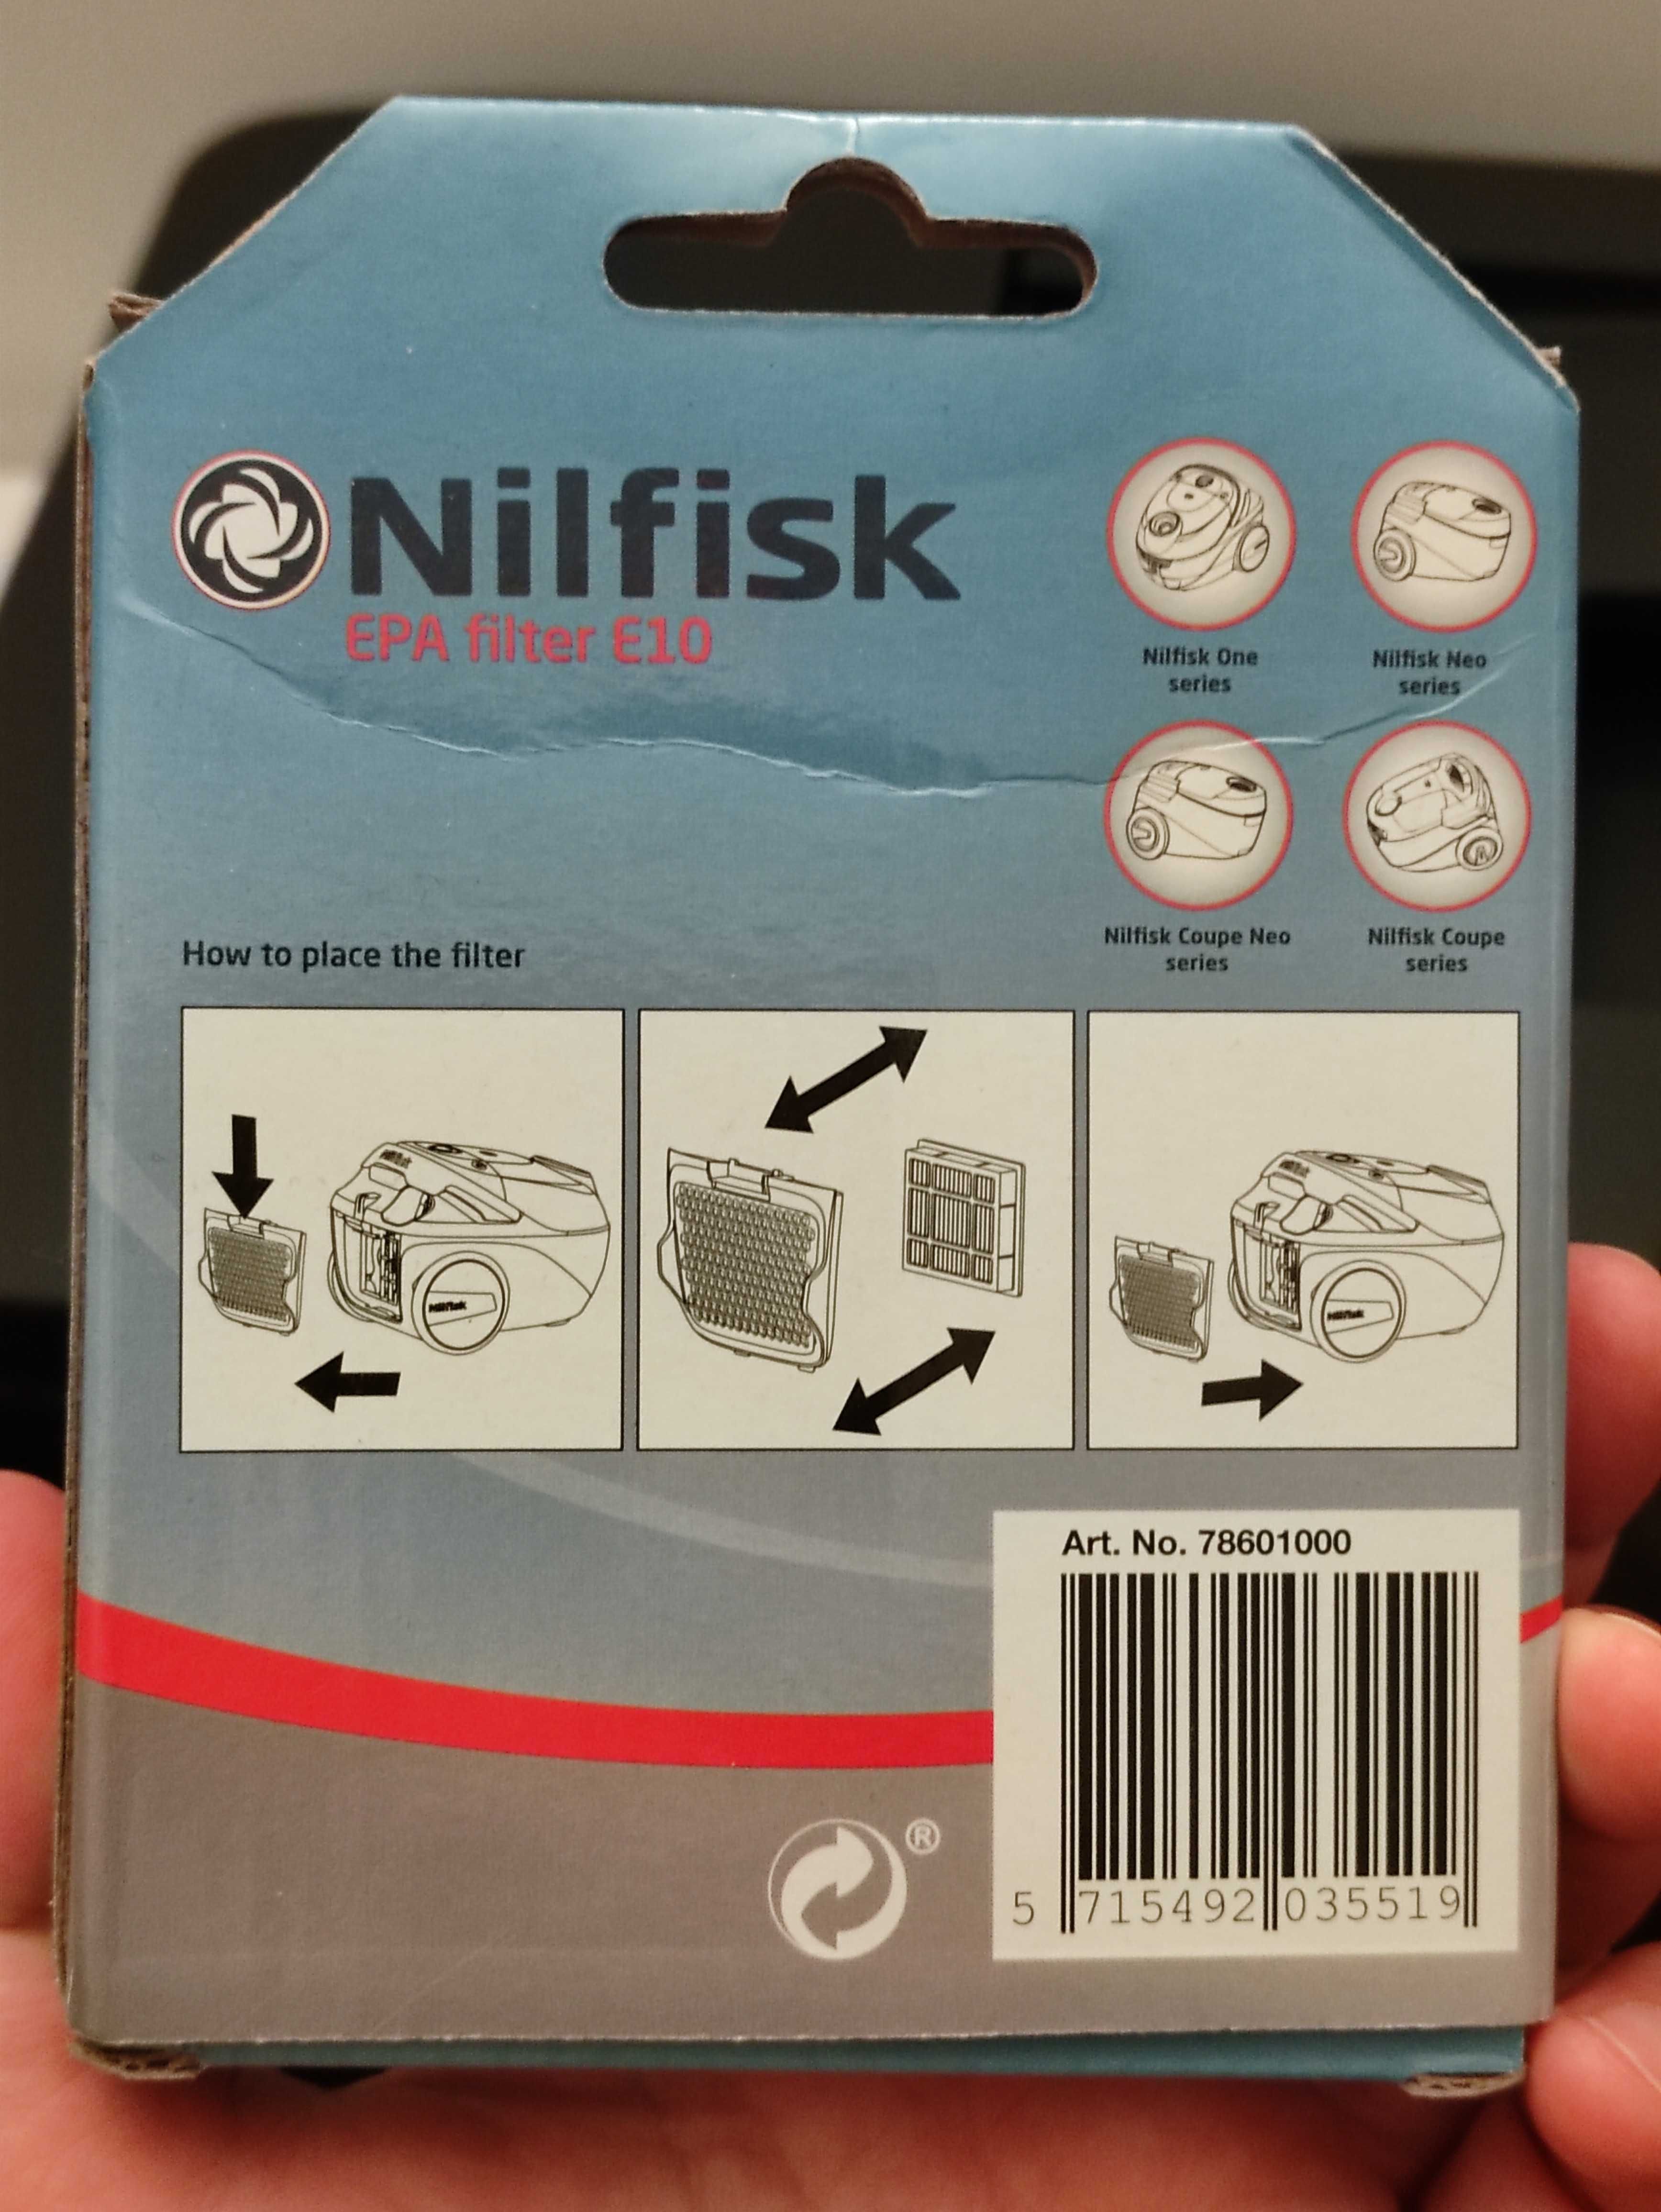 Nilfisk Filtro HEPA E10 - original